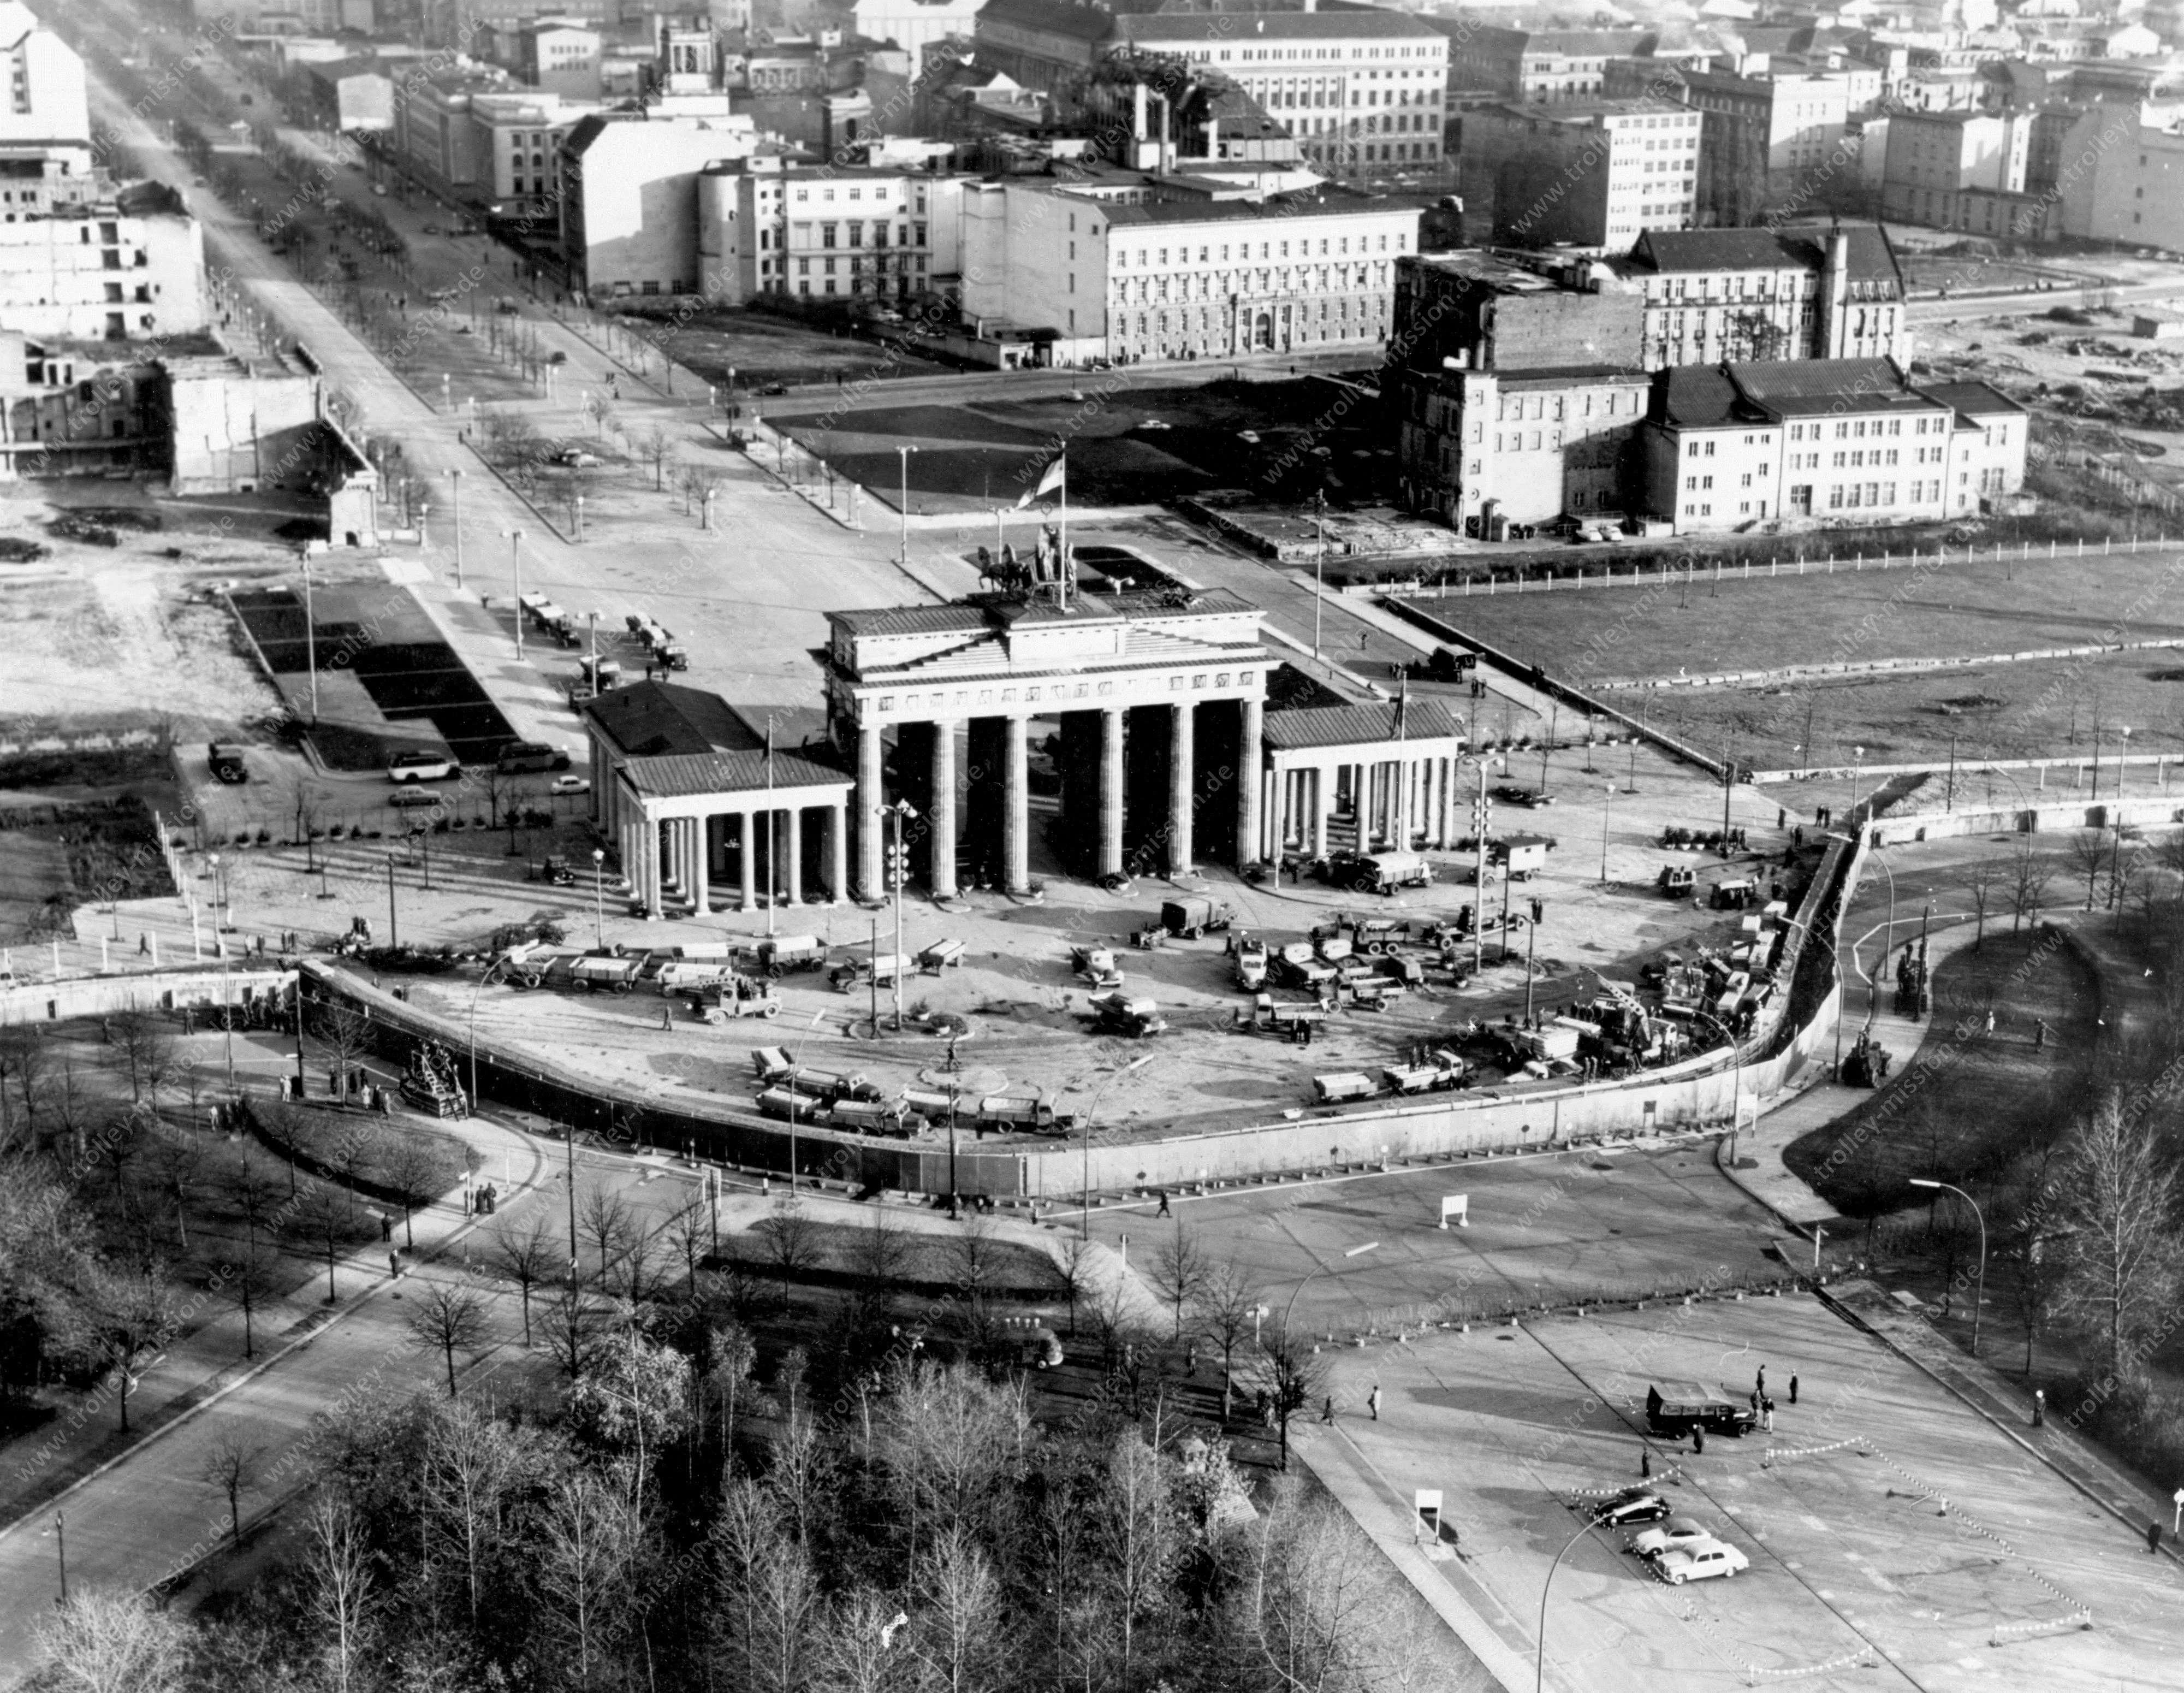 Luftaufnahme Brandenburger Tor vom 30. November 1961